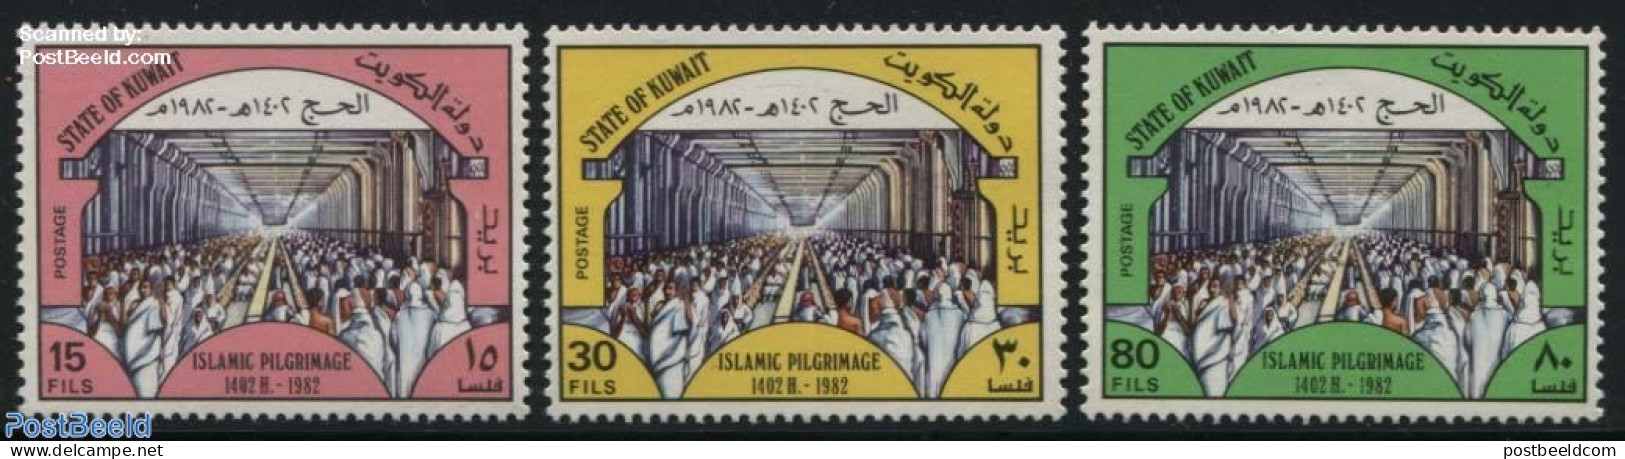 Kuwait 1982 Mecca Pilgrims 3v, Mint NH, Religion - Religion - Koeweit